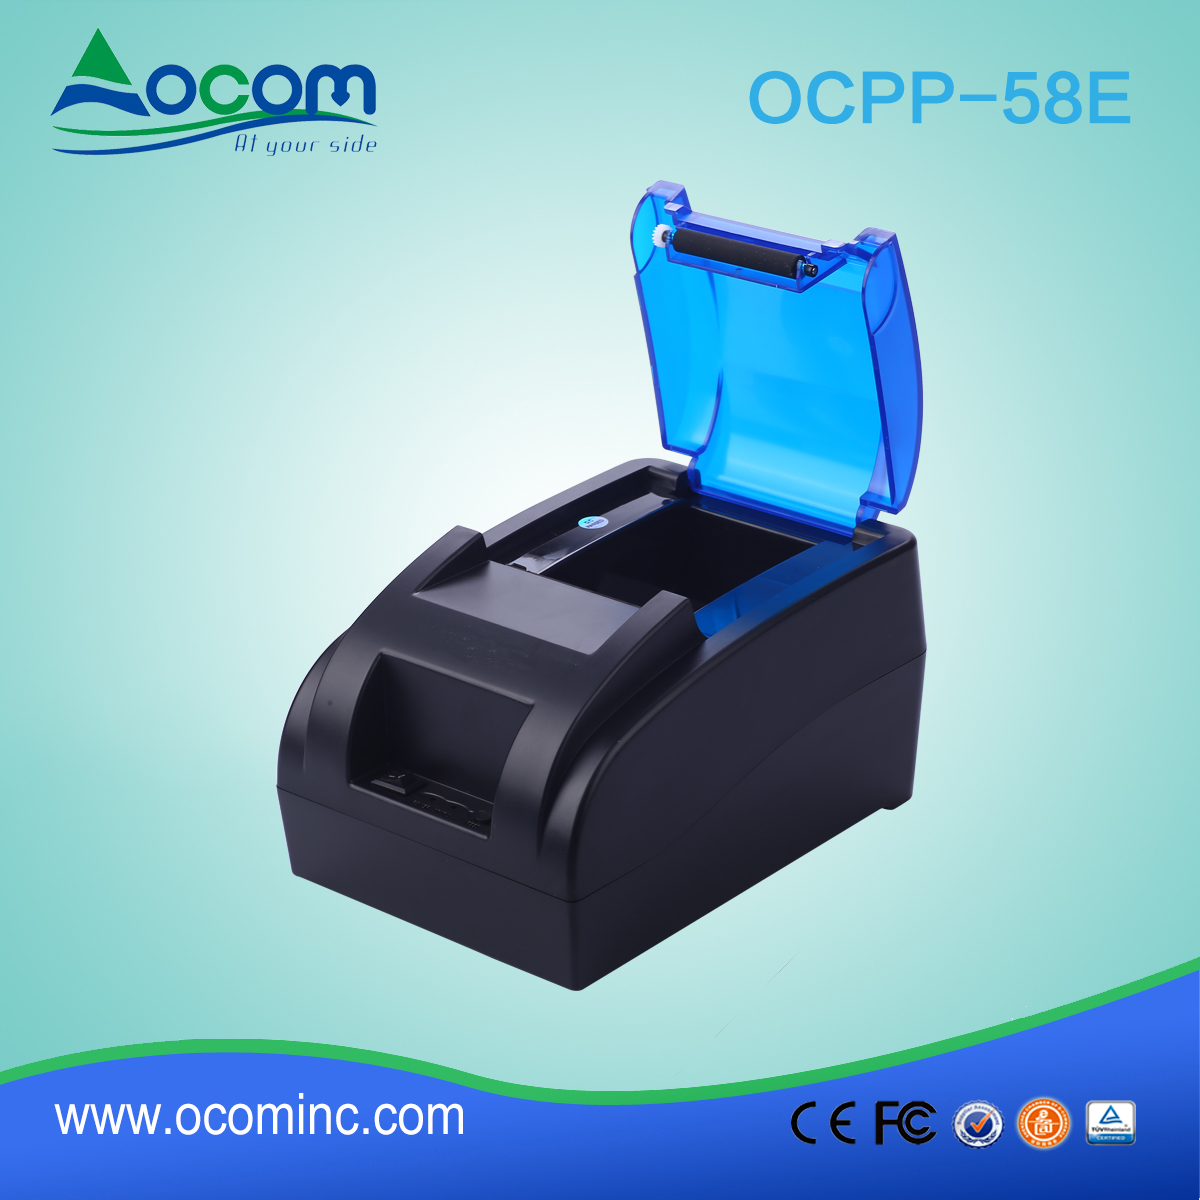 Έγχρωμος εκτυπωτής παραλαβής OCPP -58E-U 58 χιλ. Με ενσωματωμένο τροφοδοτικό